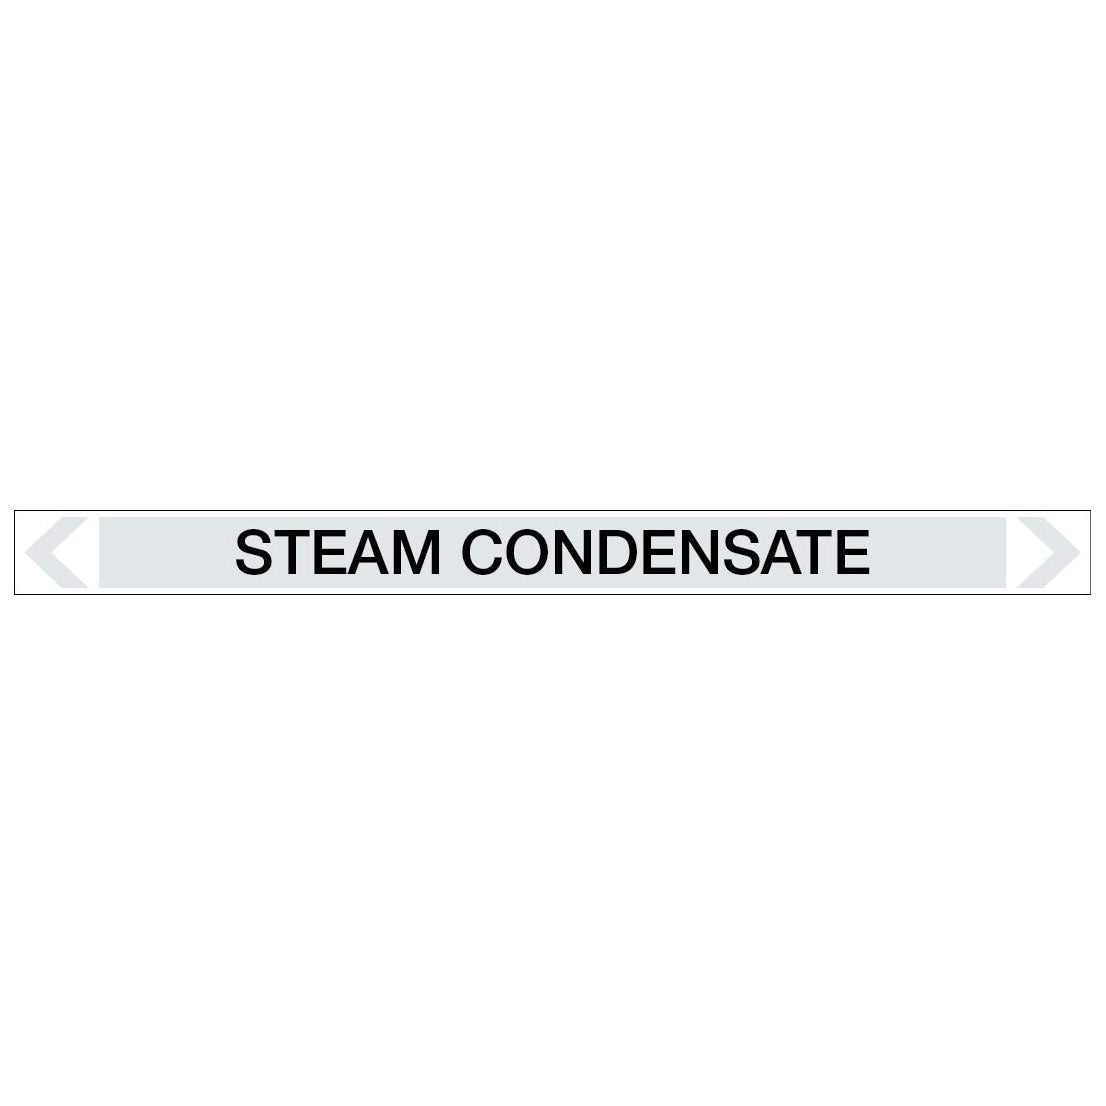 Steam - Steam Condensate - Pipe Marker Sticker